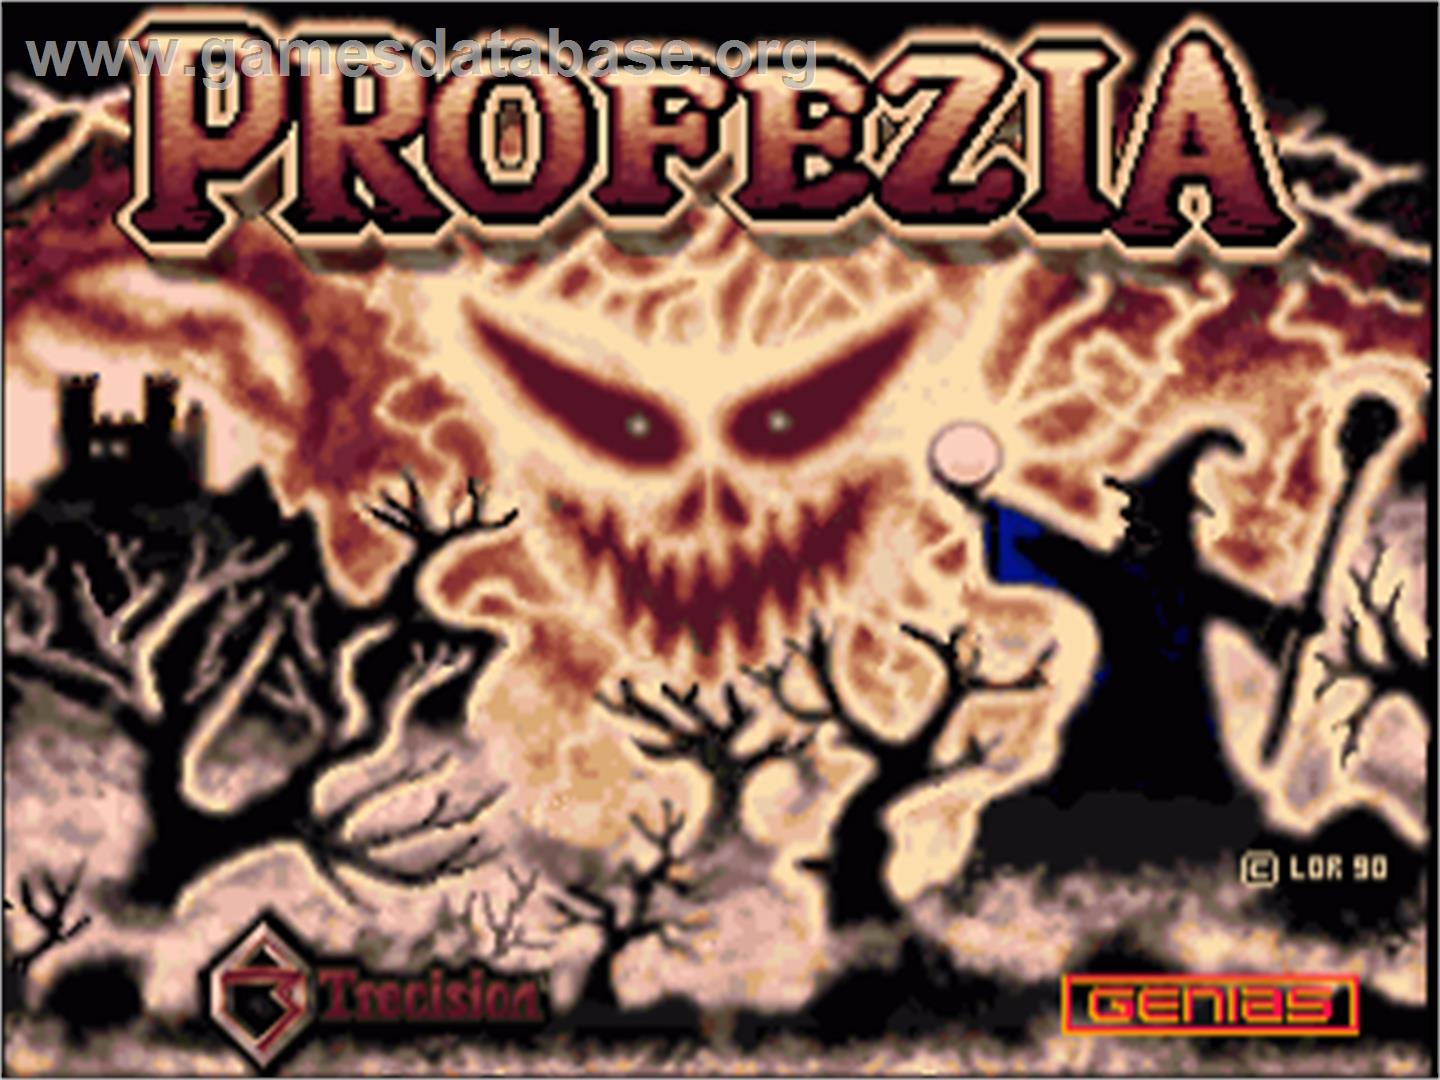 Profezia - Commodore Amiga - Artwork - Title Screen